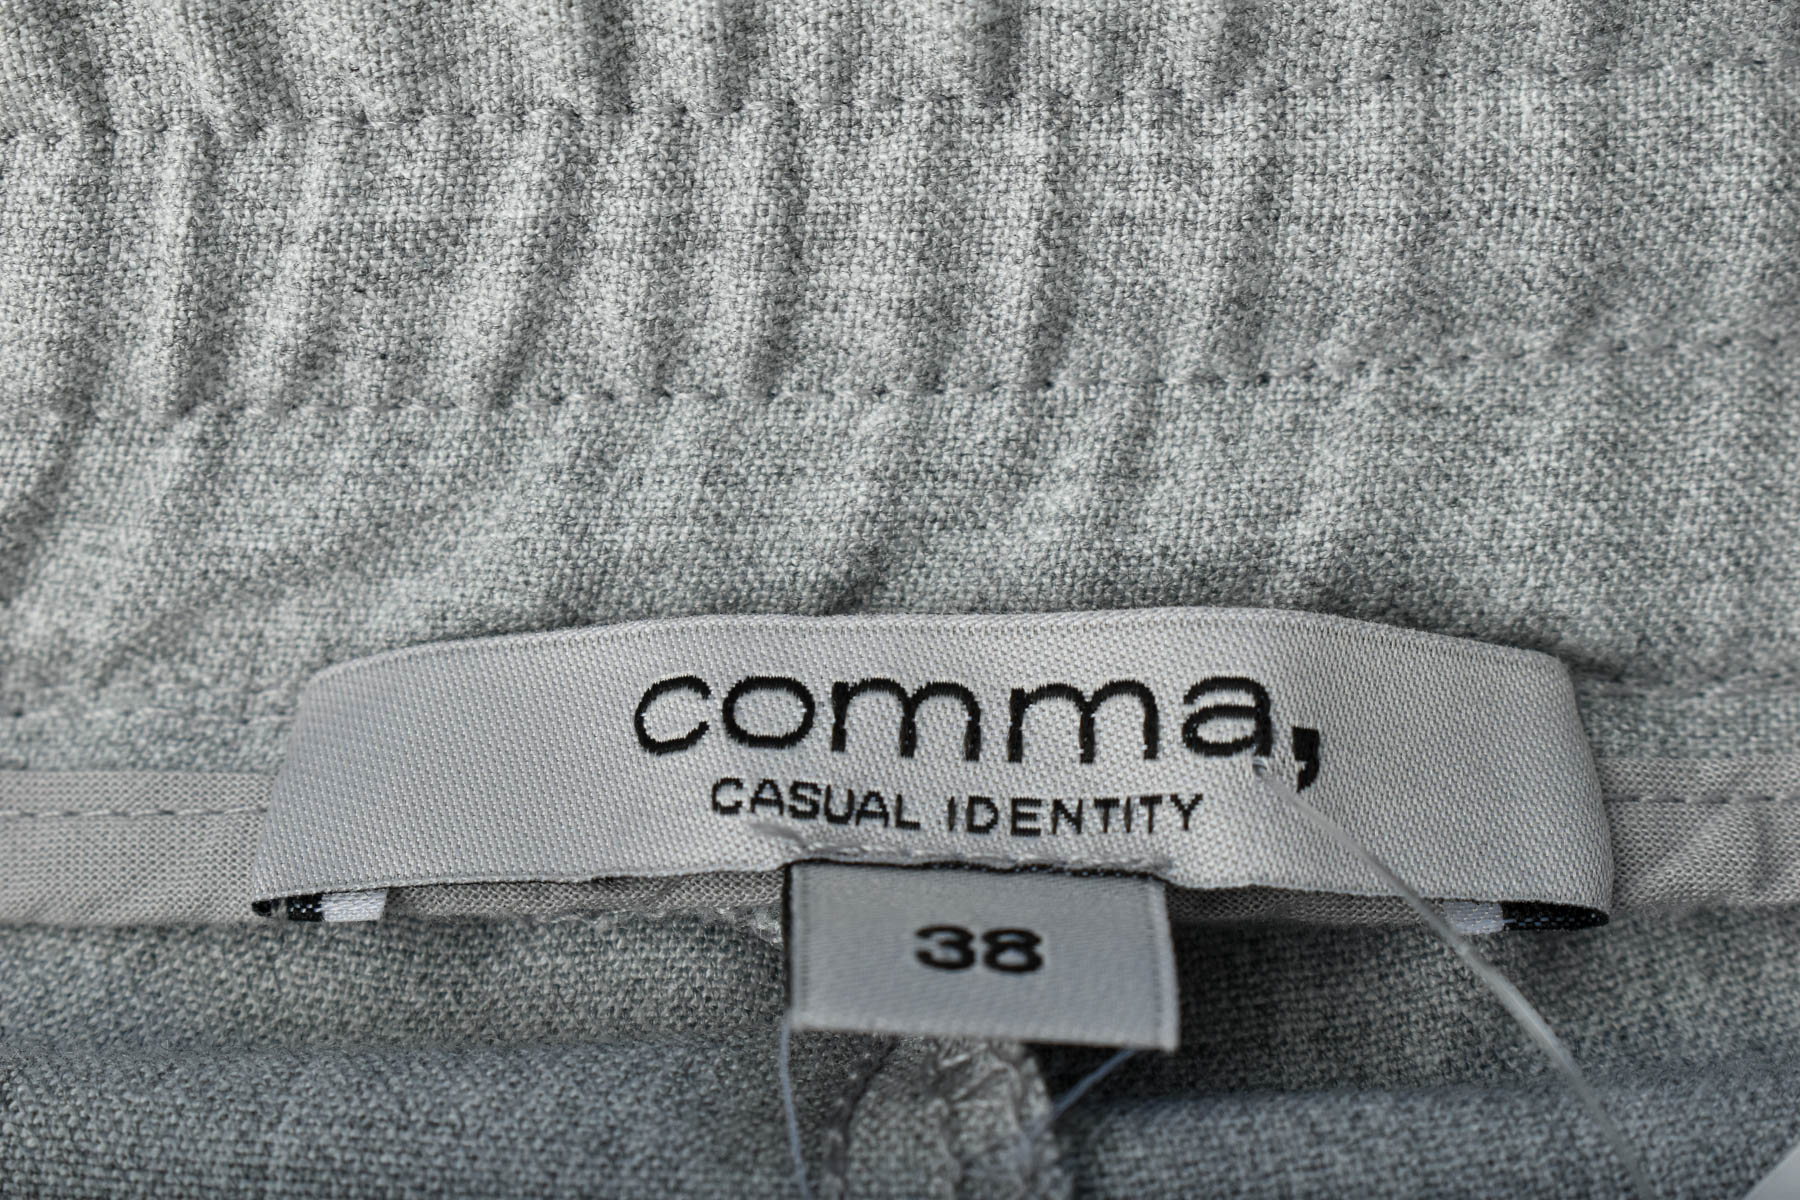 Women's trousers - Comma, - 2